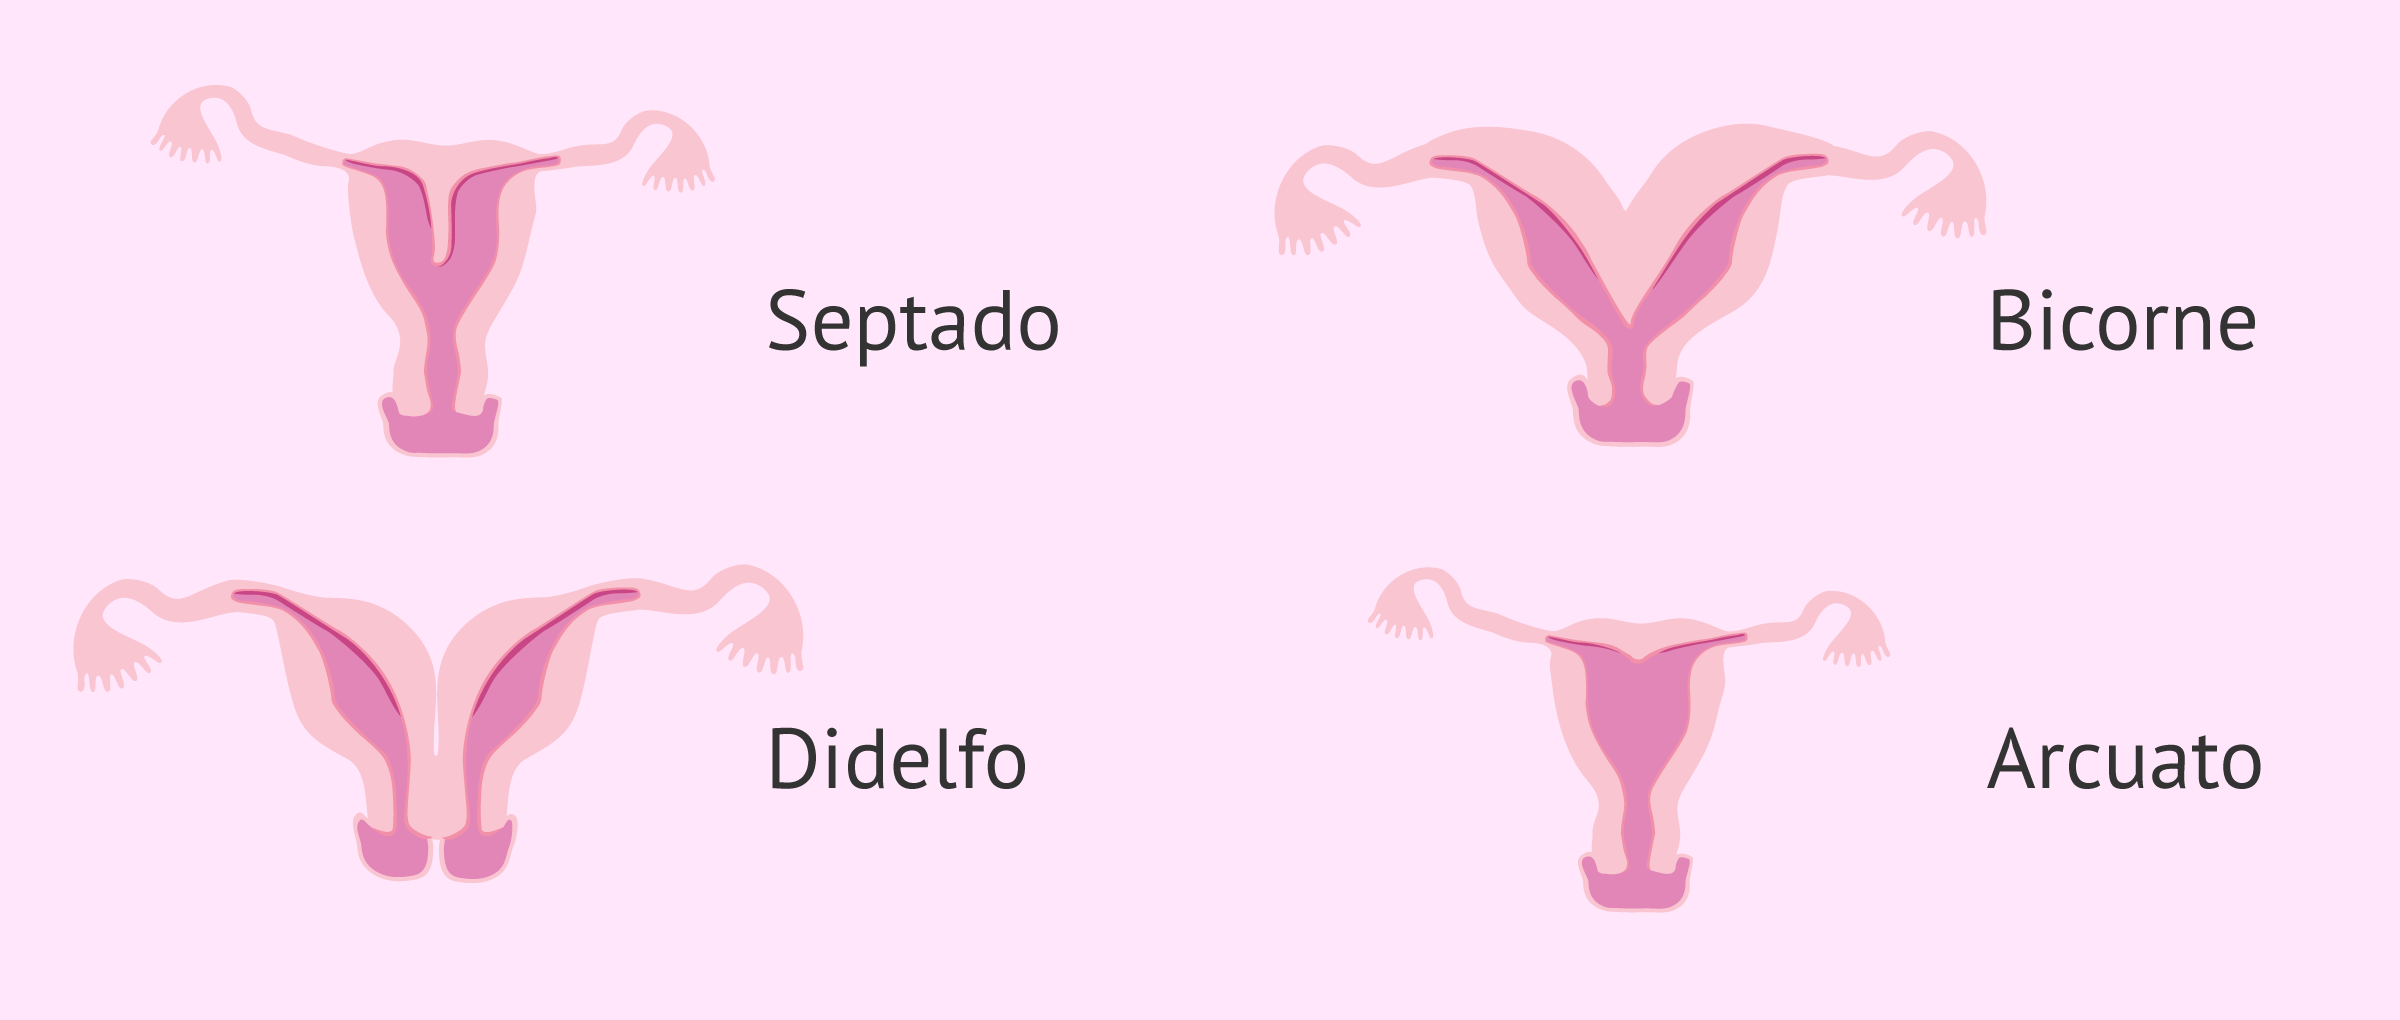 Anomalías uterinas comunes